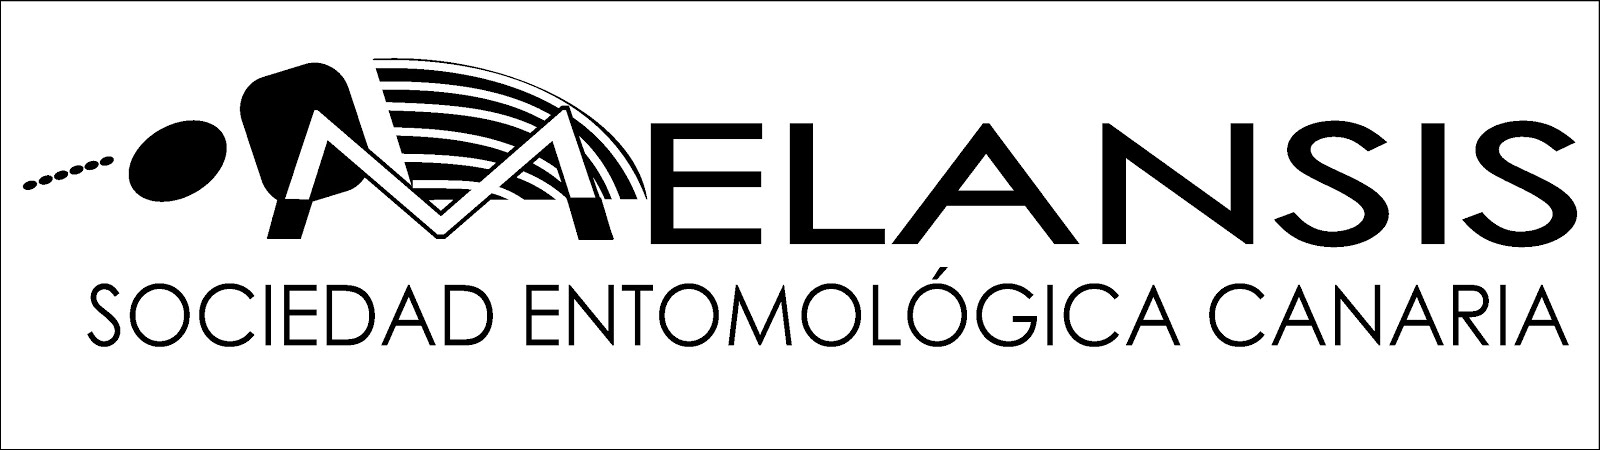 Sociedad Entomológica Canaria Melansis